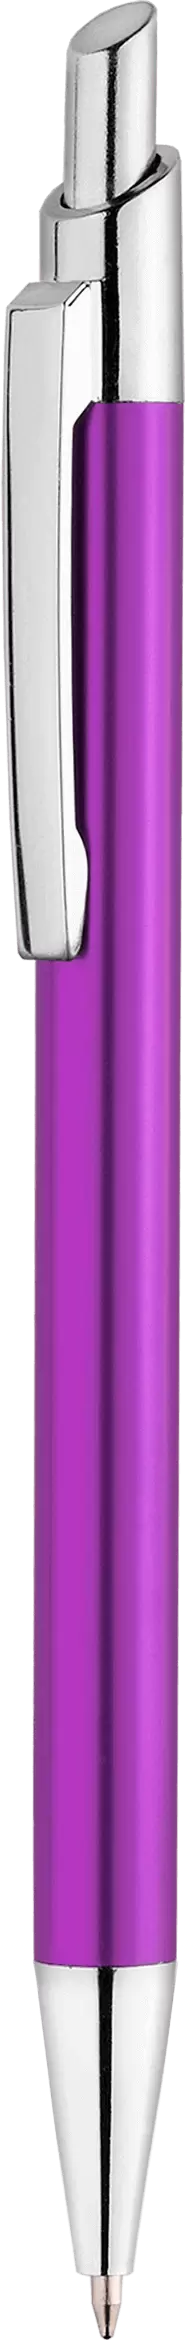 Ручка TIKKO Фиолетовая 2105-11